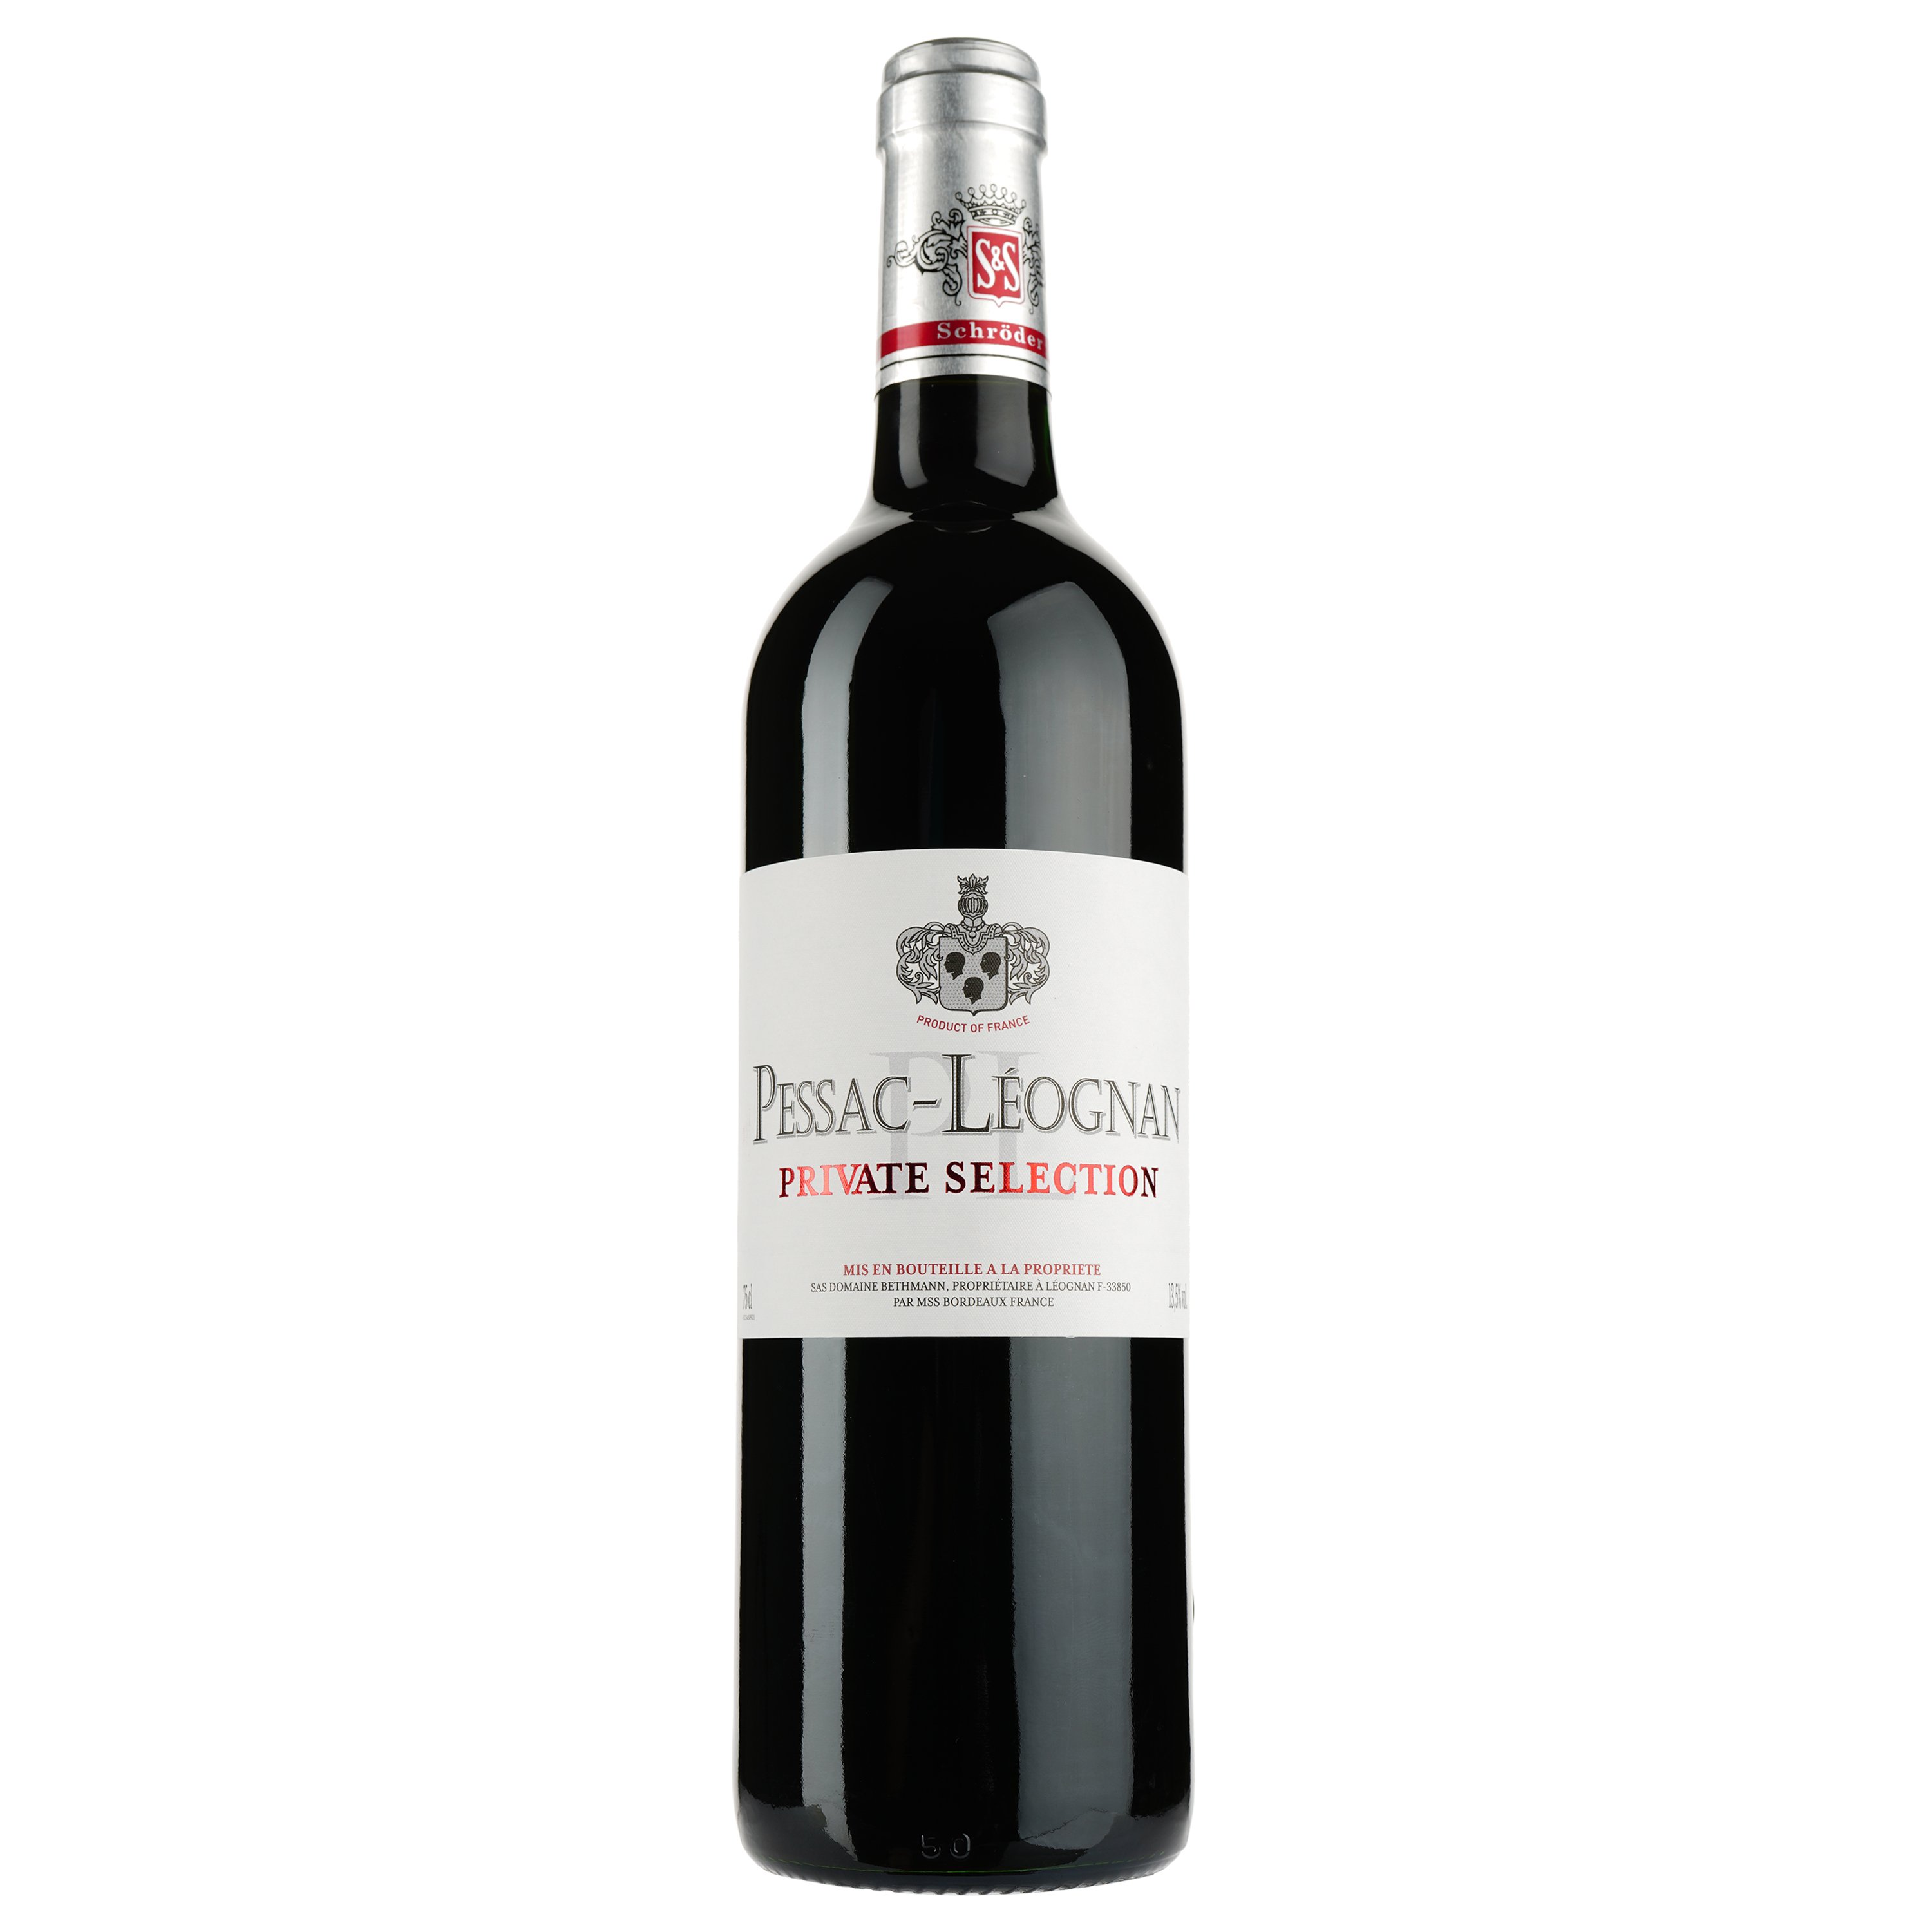 Вино Private Selection Schröder&Schÿler AOP Pessac-Leognan 2013, красное, сухое, 0,75 л - фото 1